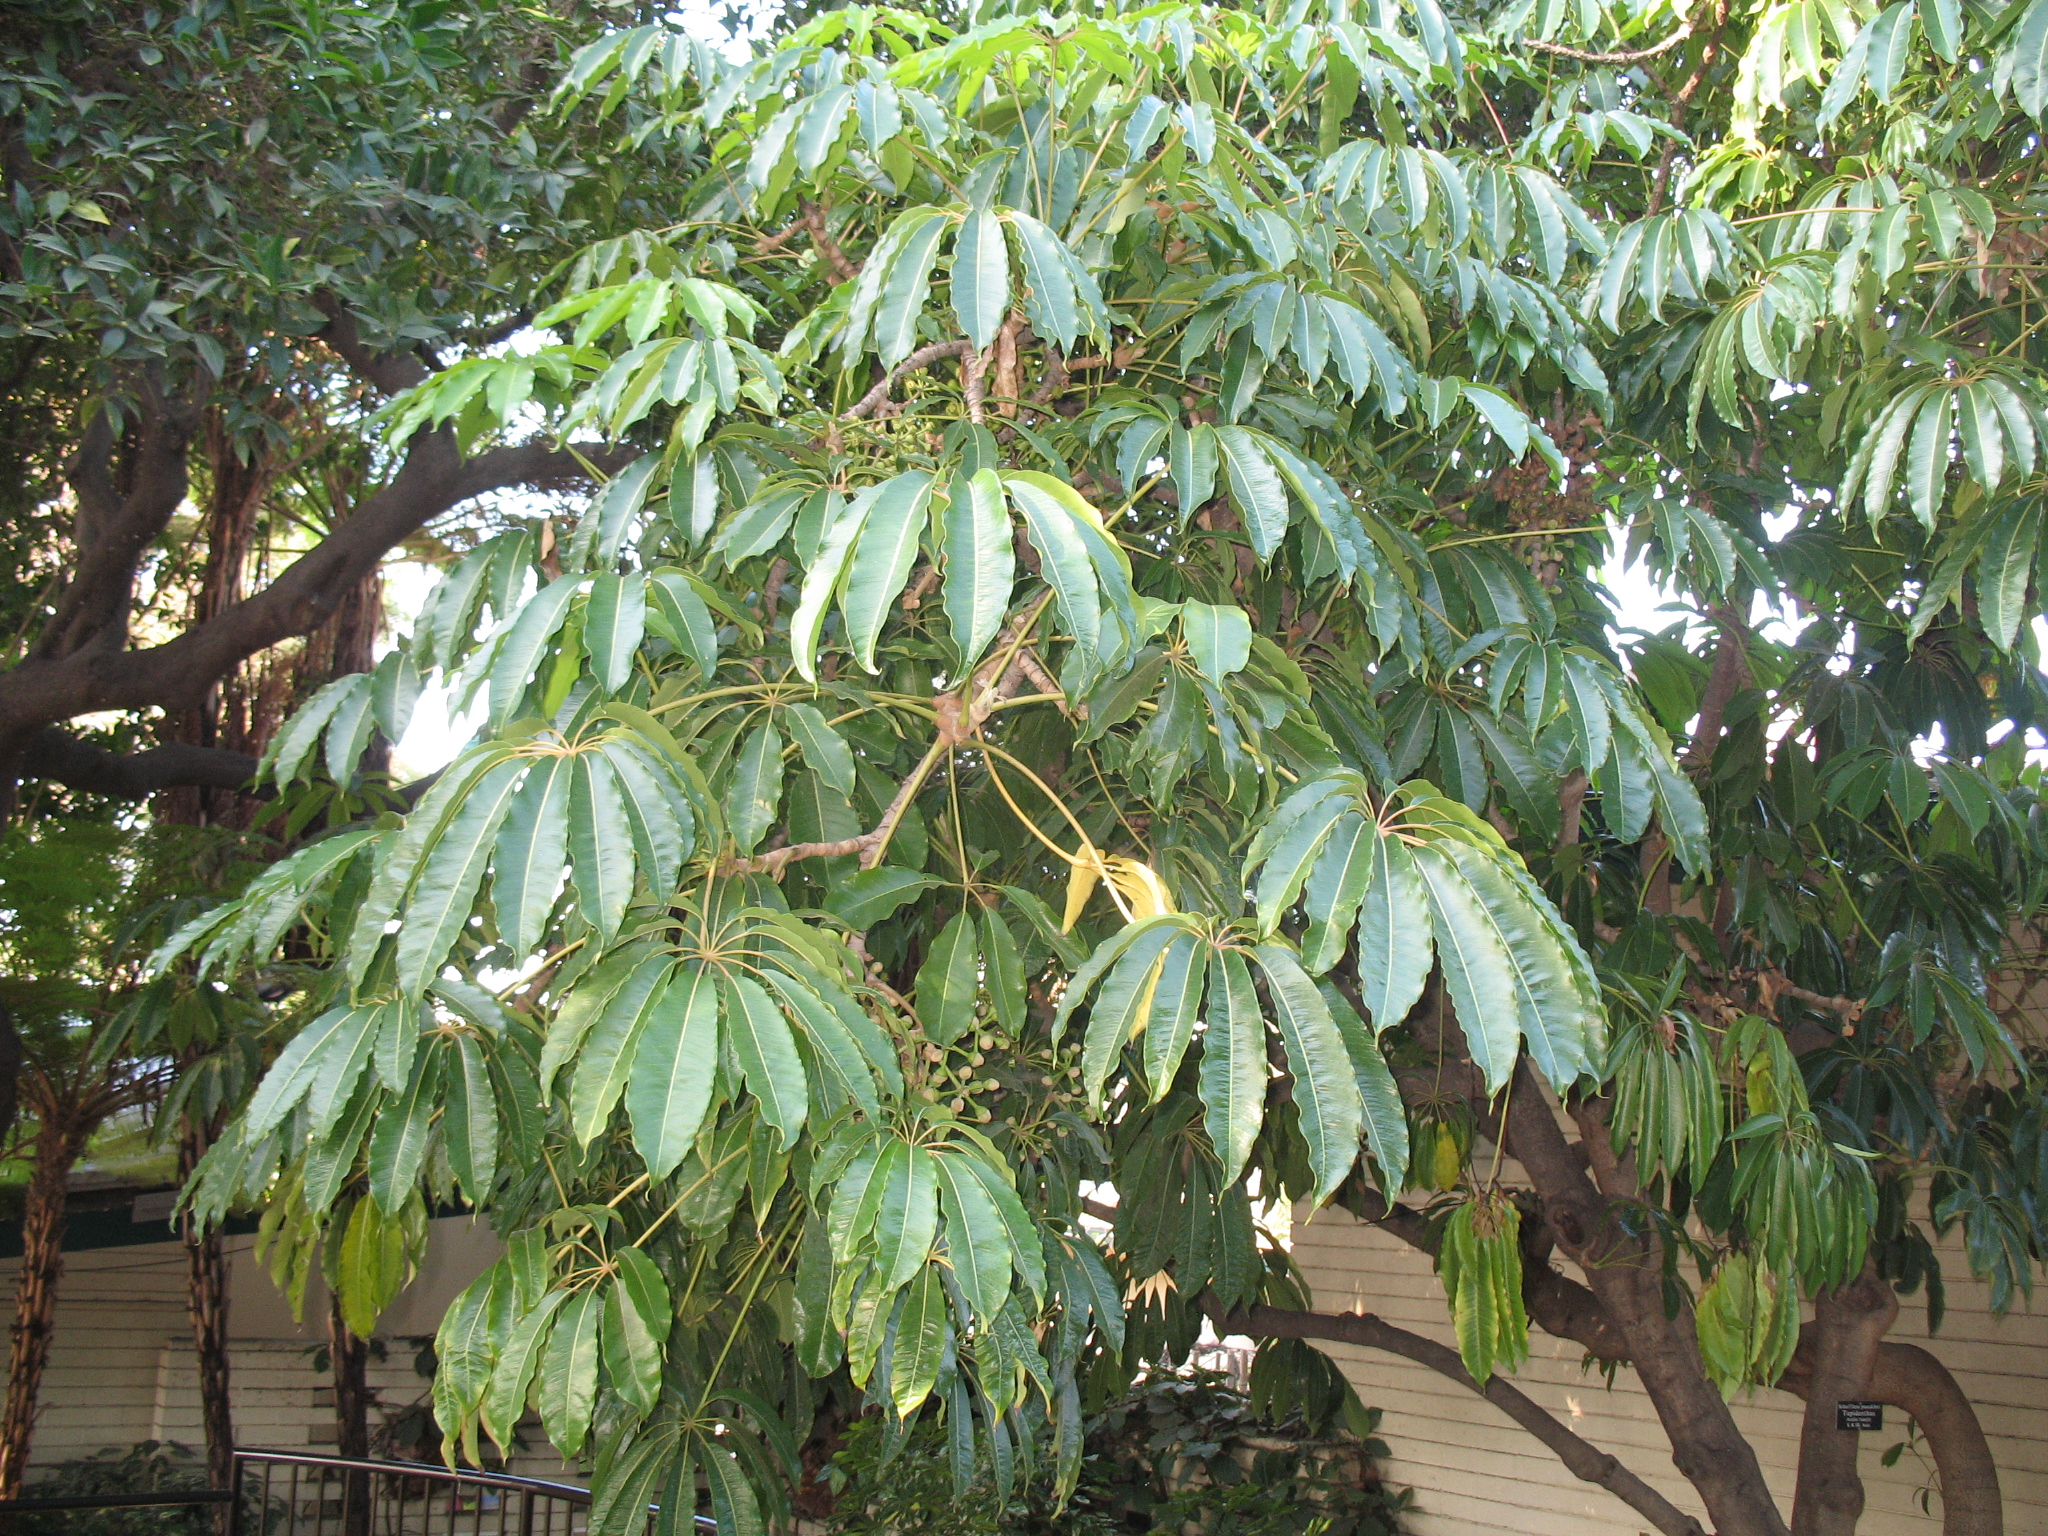 What is a Schefflera tree?